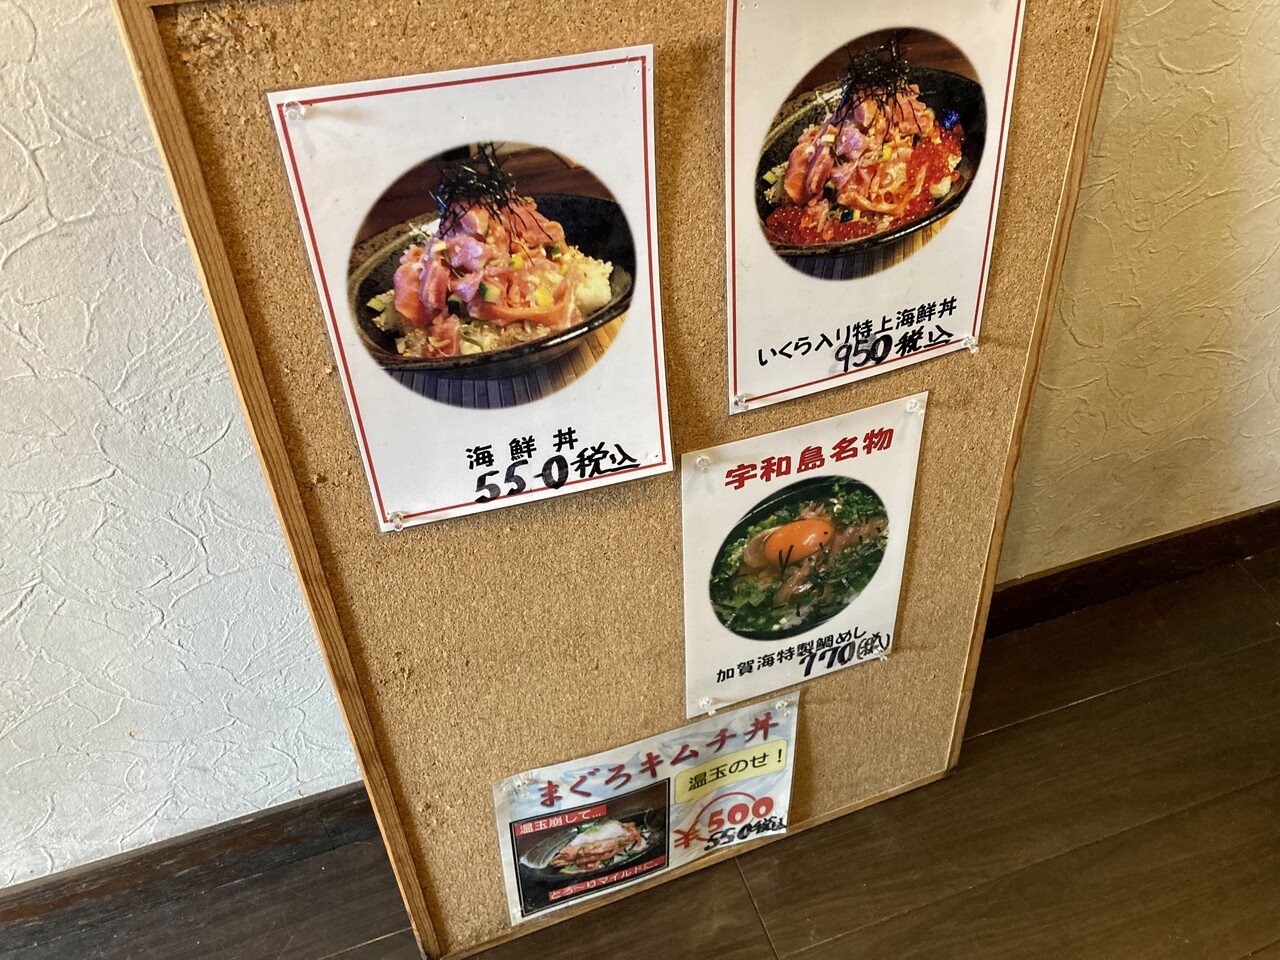 草加松原 海鮮丼 加賀海 さんで マグロが三種類入った贅沢な海鮮丼 これでワンコインはすごい Rubis Life